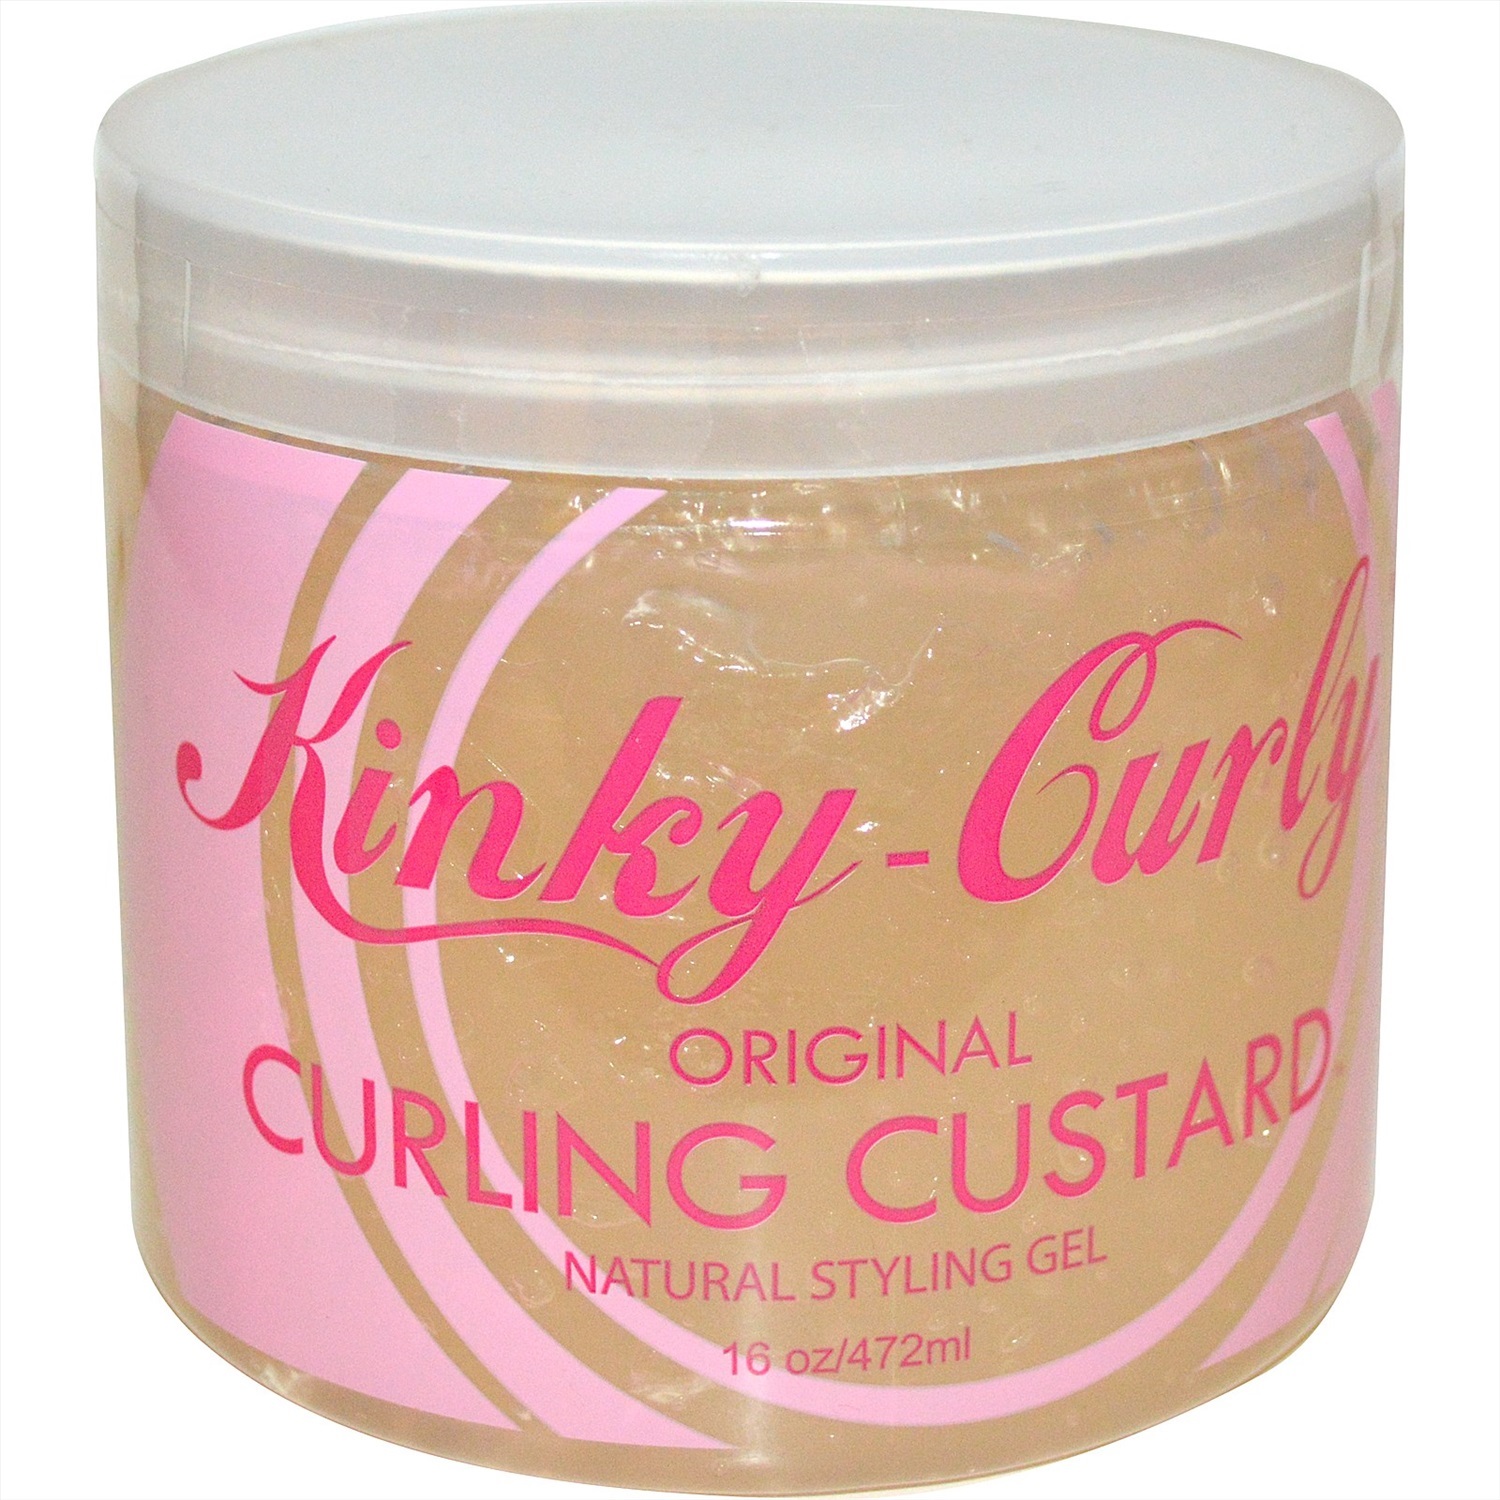 Kinky Custard